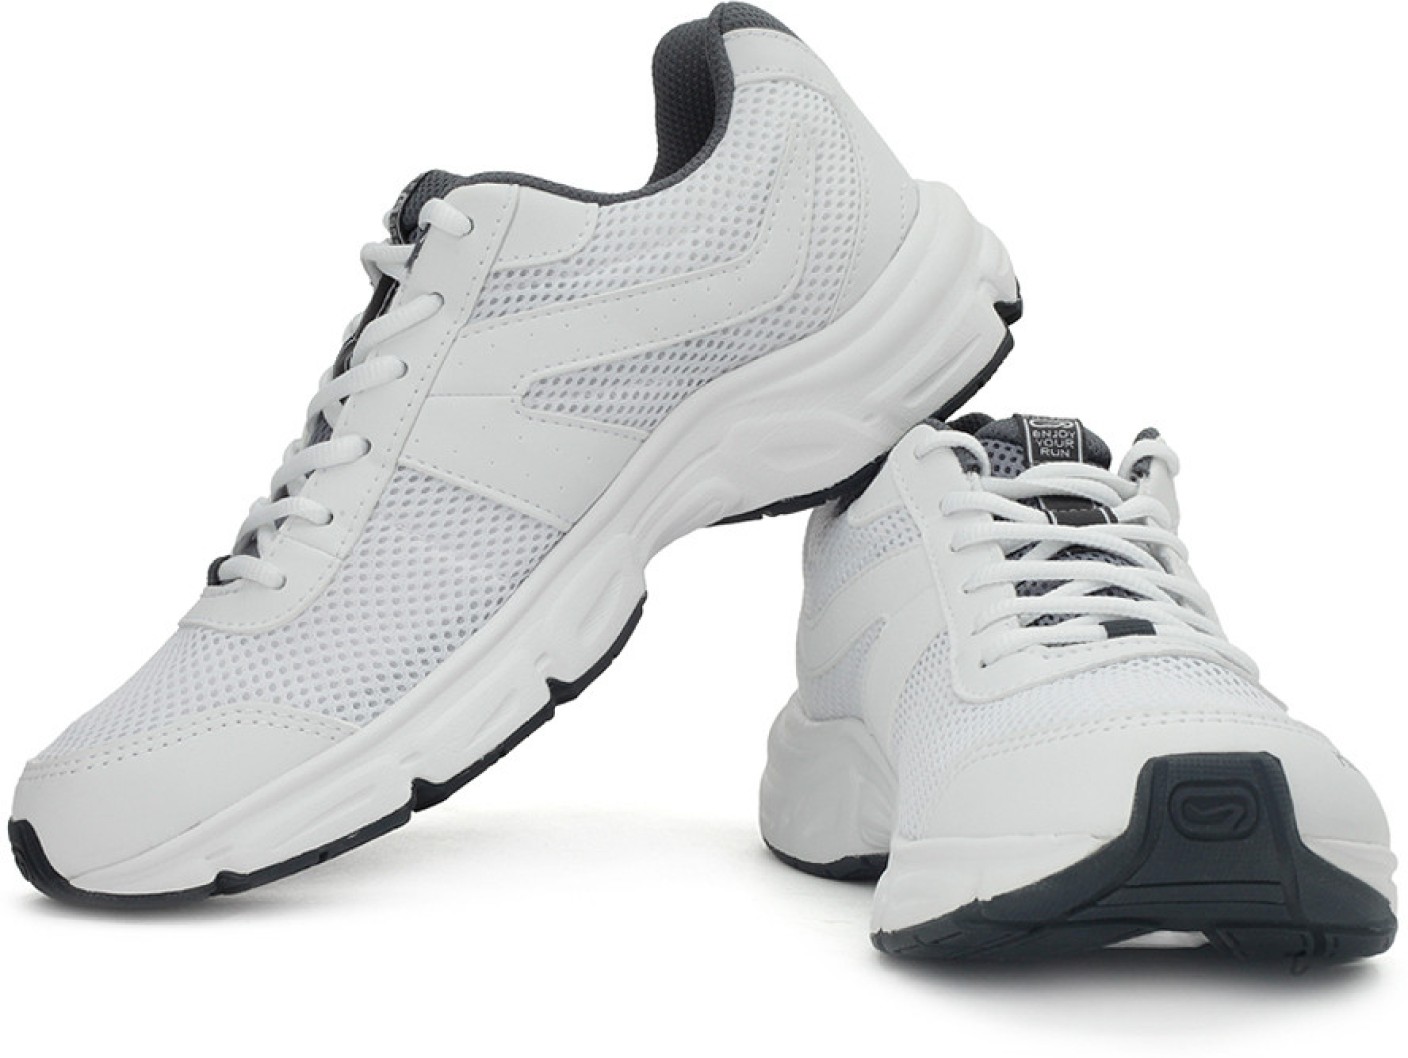 Kalenji by Decathlon Ekiden 50 Men Running Shoes For Men - Buy White ...